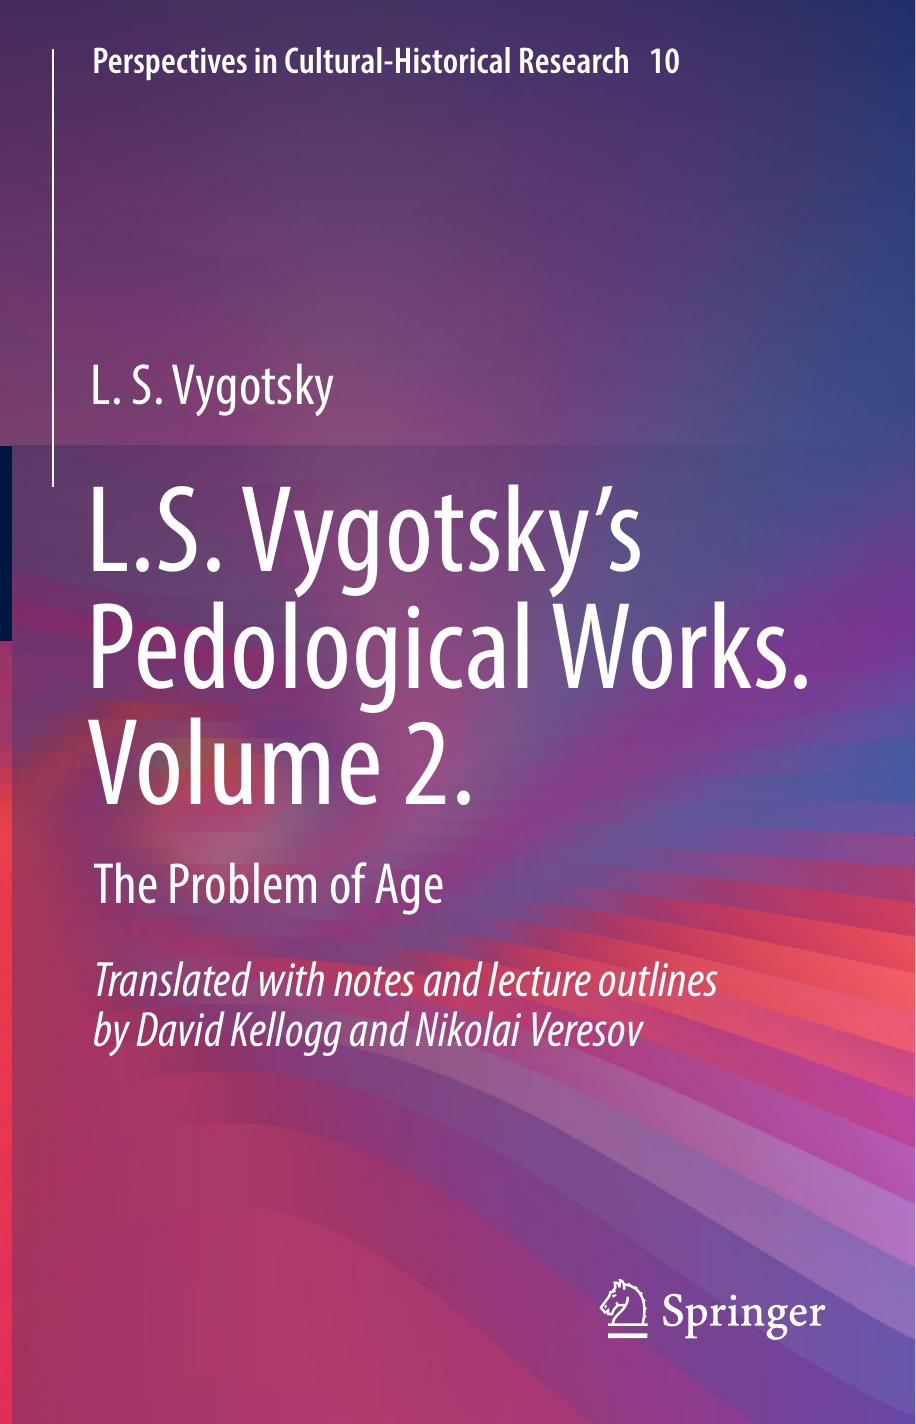 L.S. Vygotsky’s Pedological Works. Volume 2. The Problem of Age by Vygotsky, L.S., , (z-lib.org). 2021